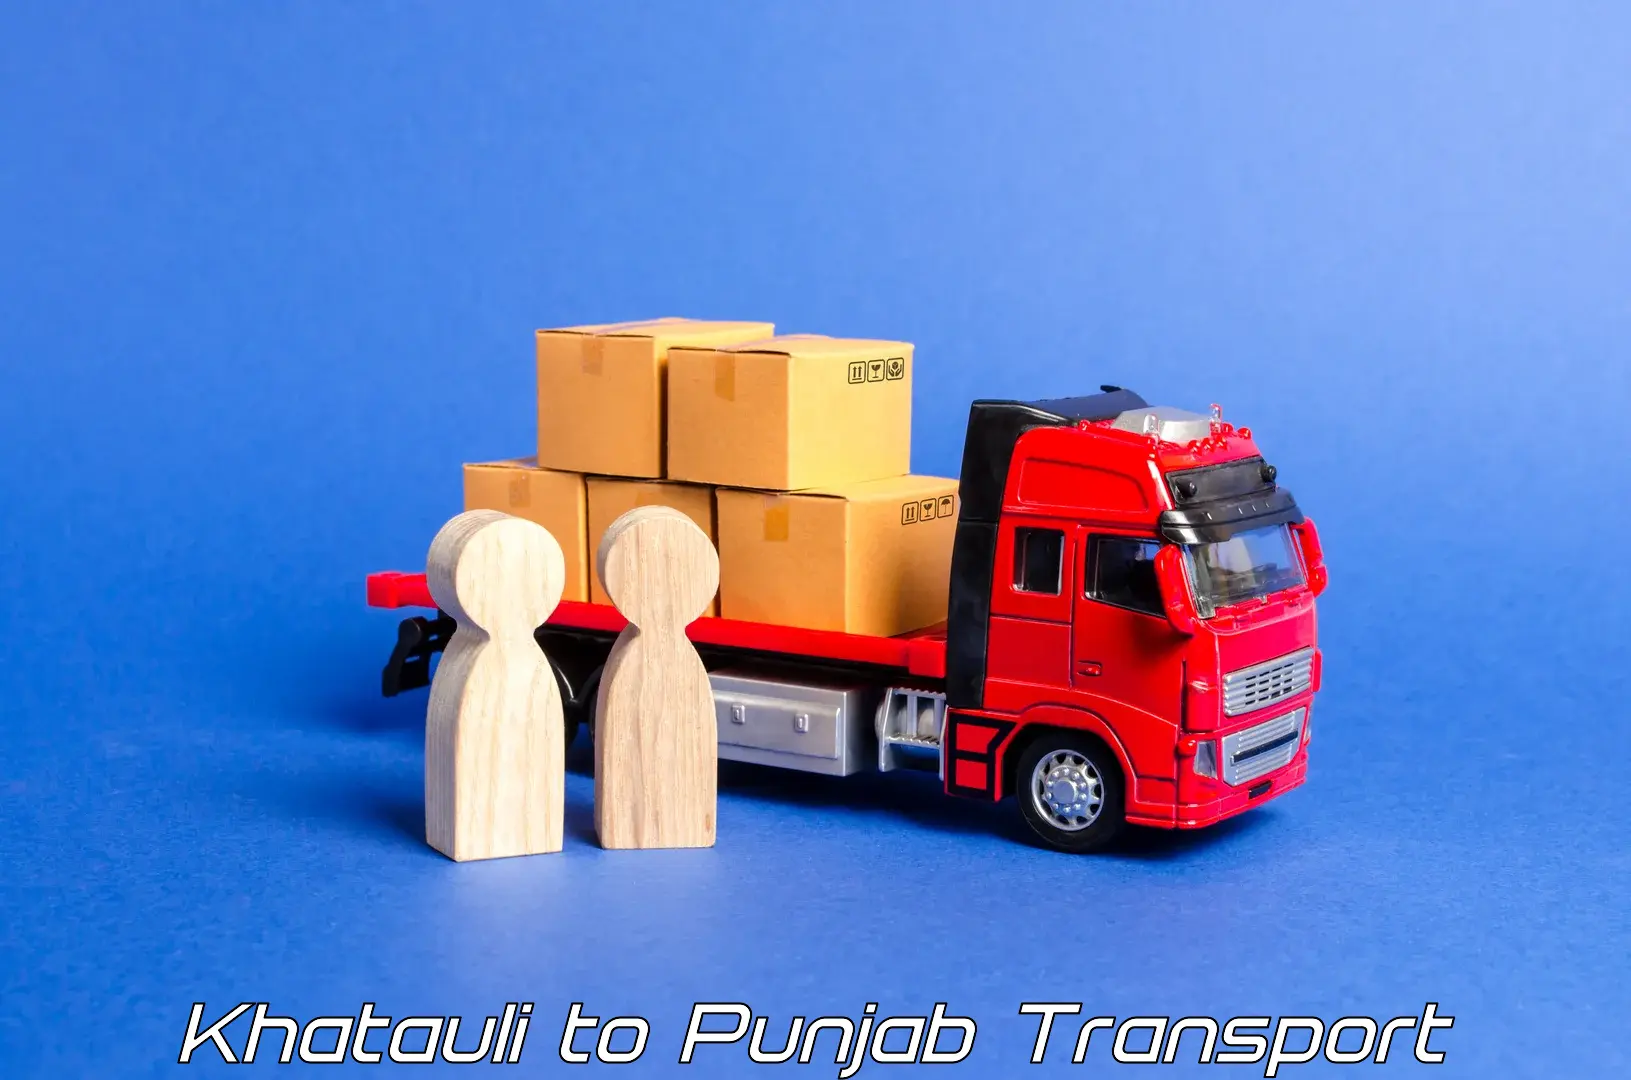 Pick up transport service Khatauli to Pathankot